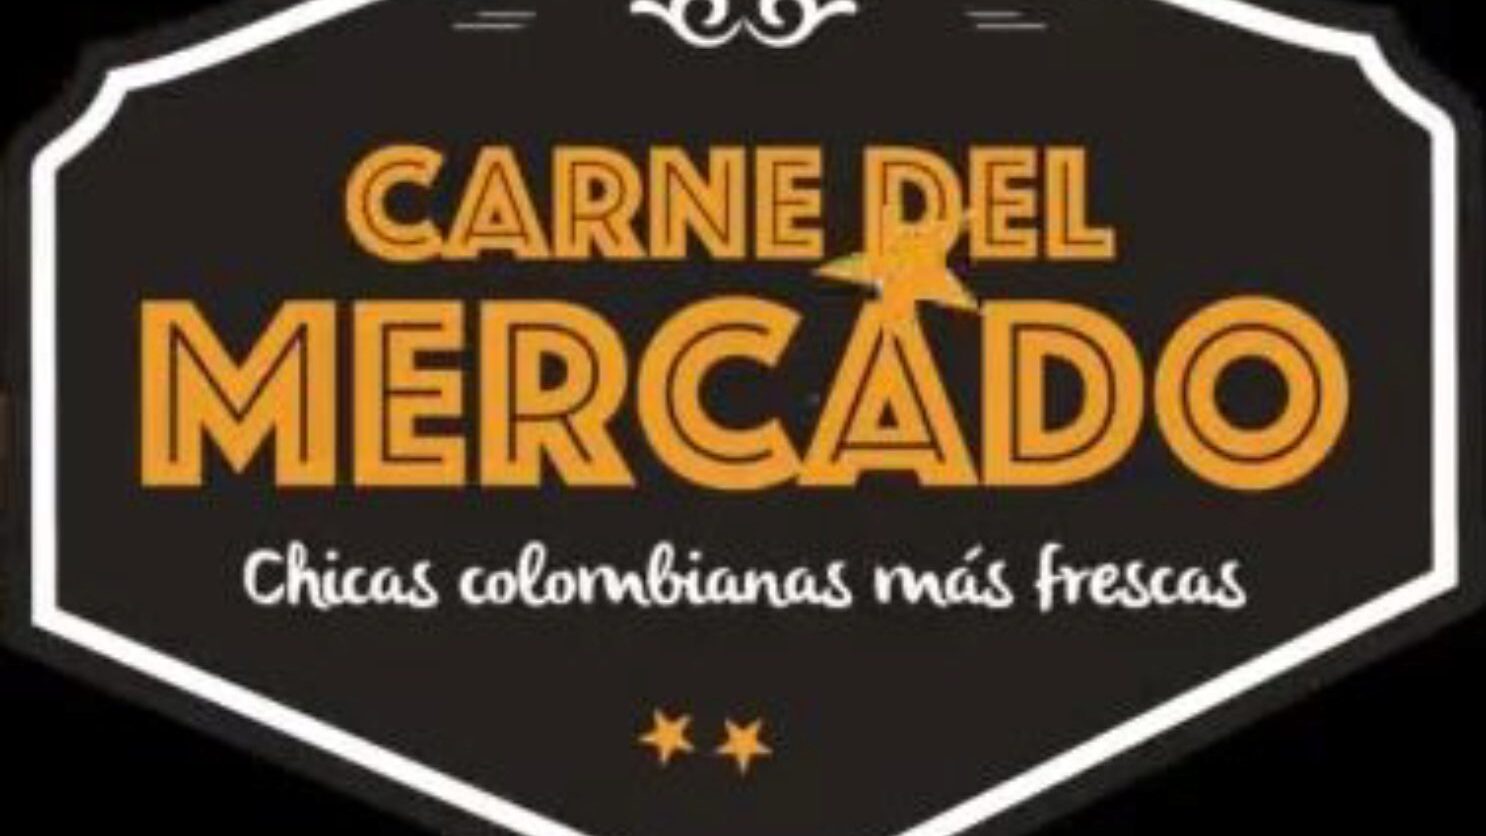 летсдоеит - врућа колумбијска дроља покупљена на пијаци да би се фацијализовала